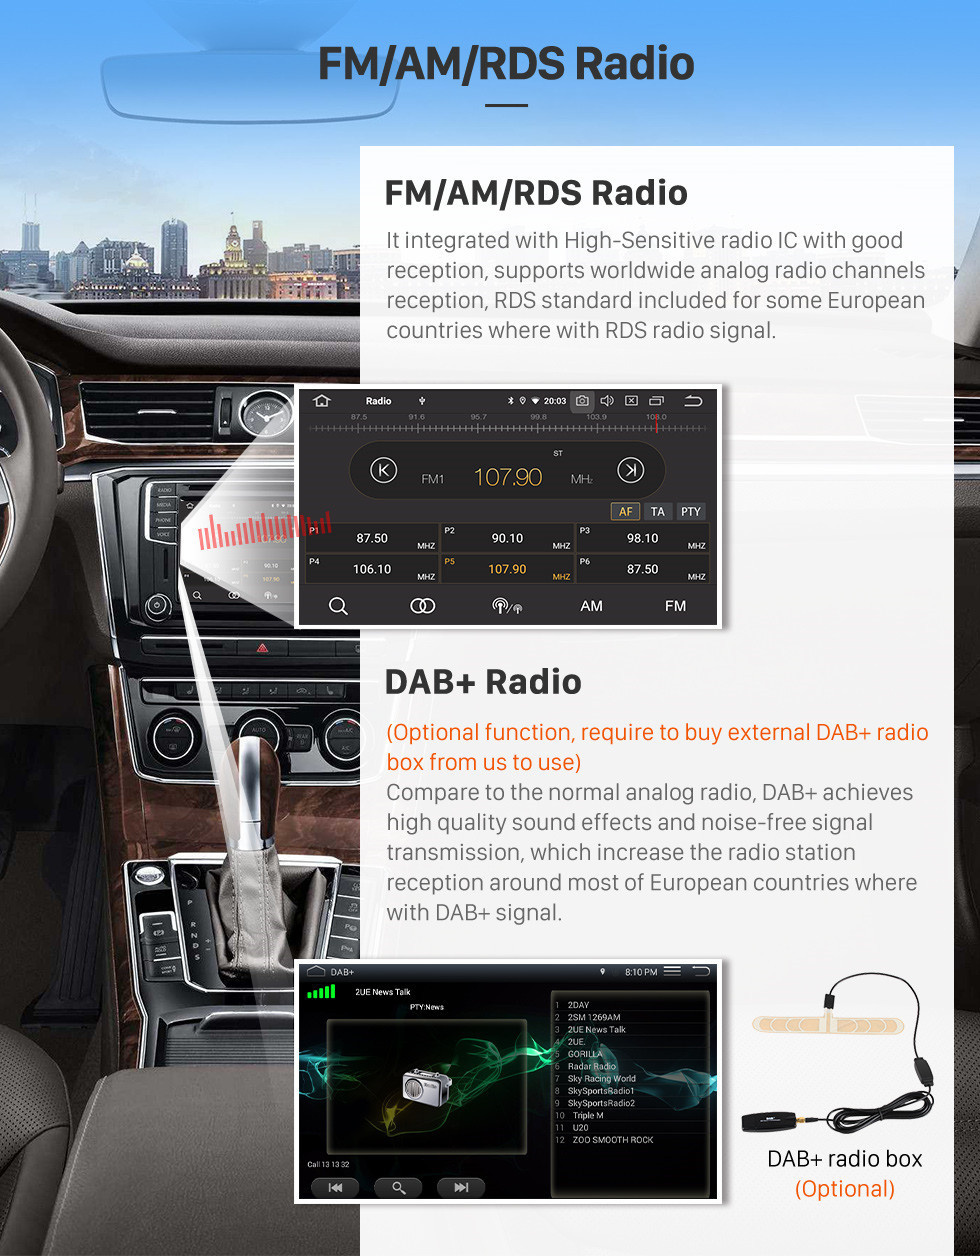 Seicane 2000-2016 Peugeot 206 Android 12.0 9 polegadas GPS Navegação Rádio Bluetooth HD Touchscreen WIFI USB Carplay suporte câmera de backup